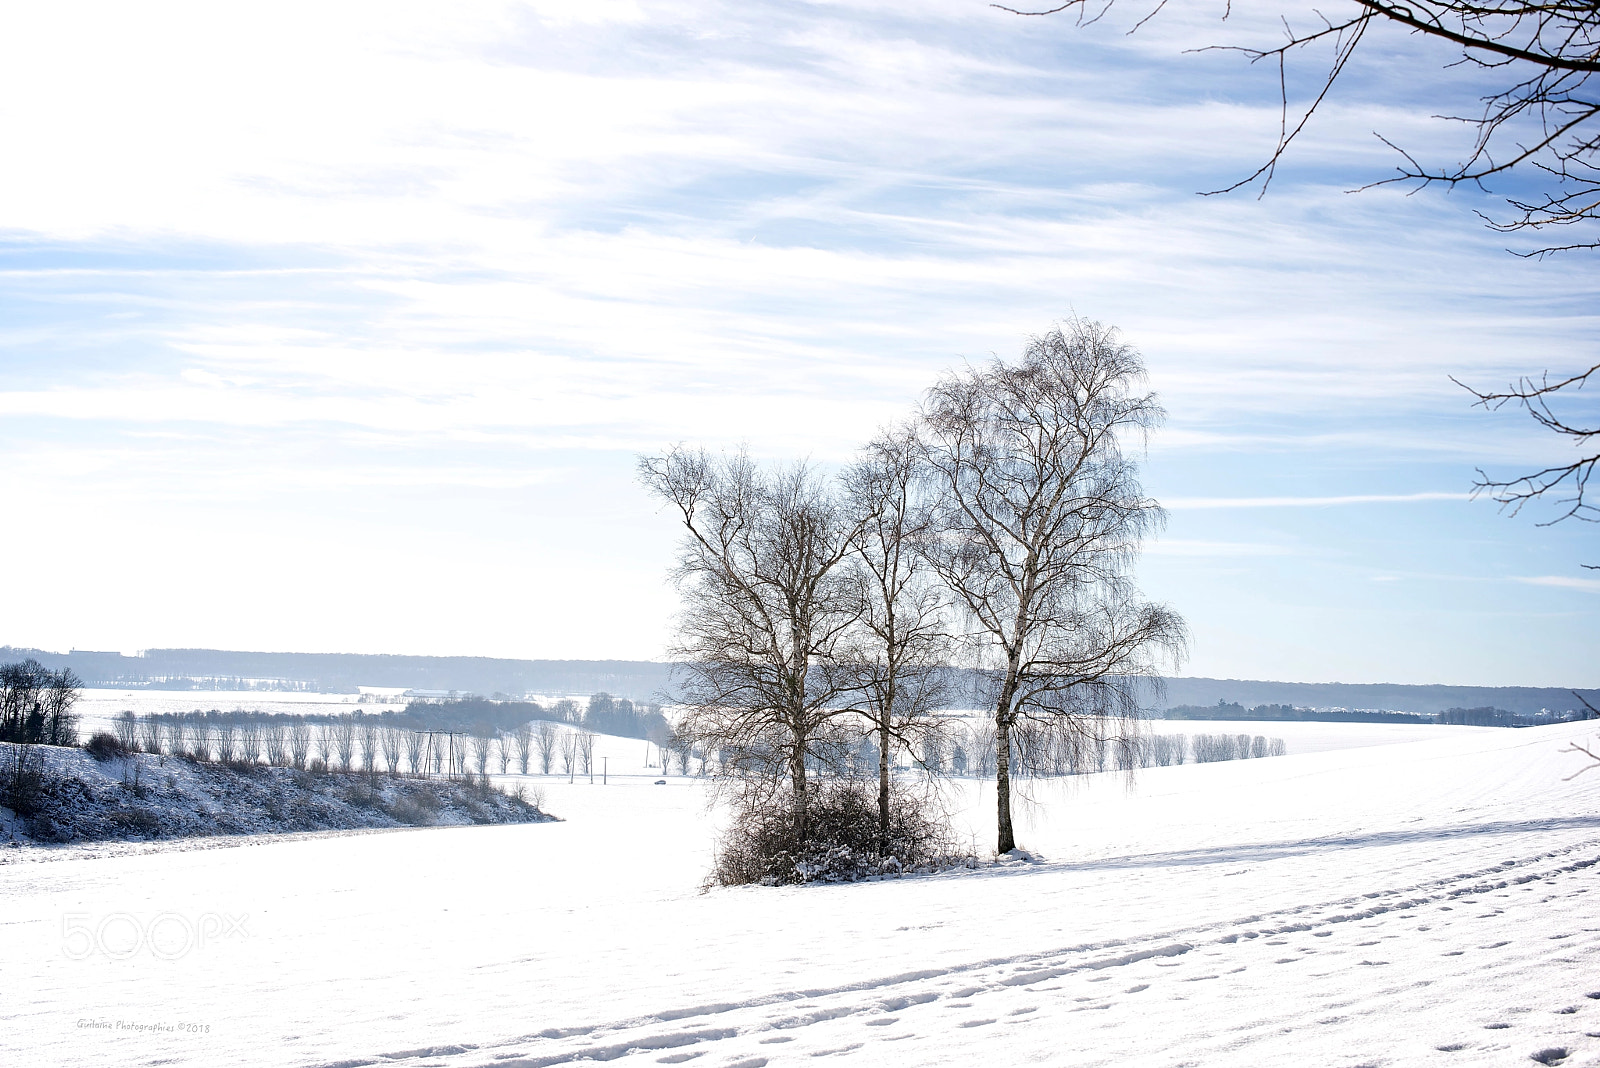 Nikon D800 sample photo. Neige en plaine. snow photography